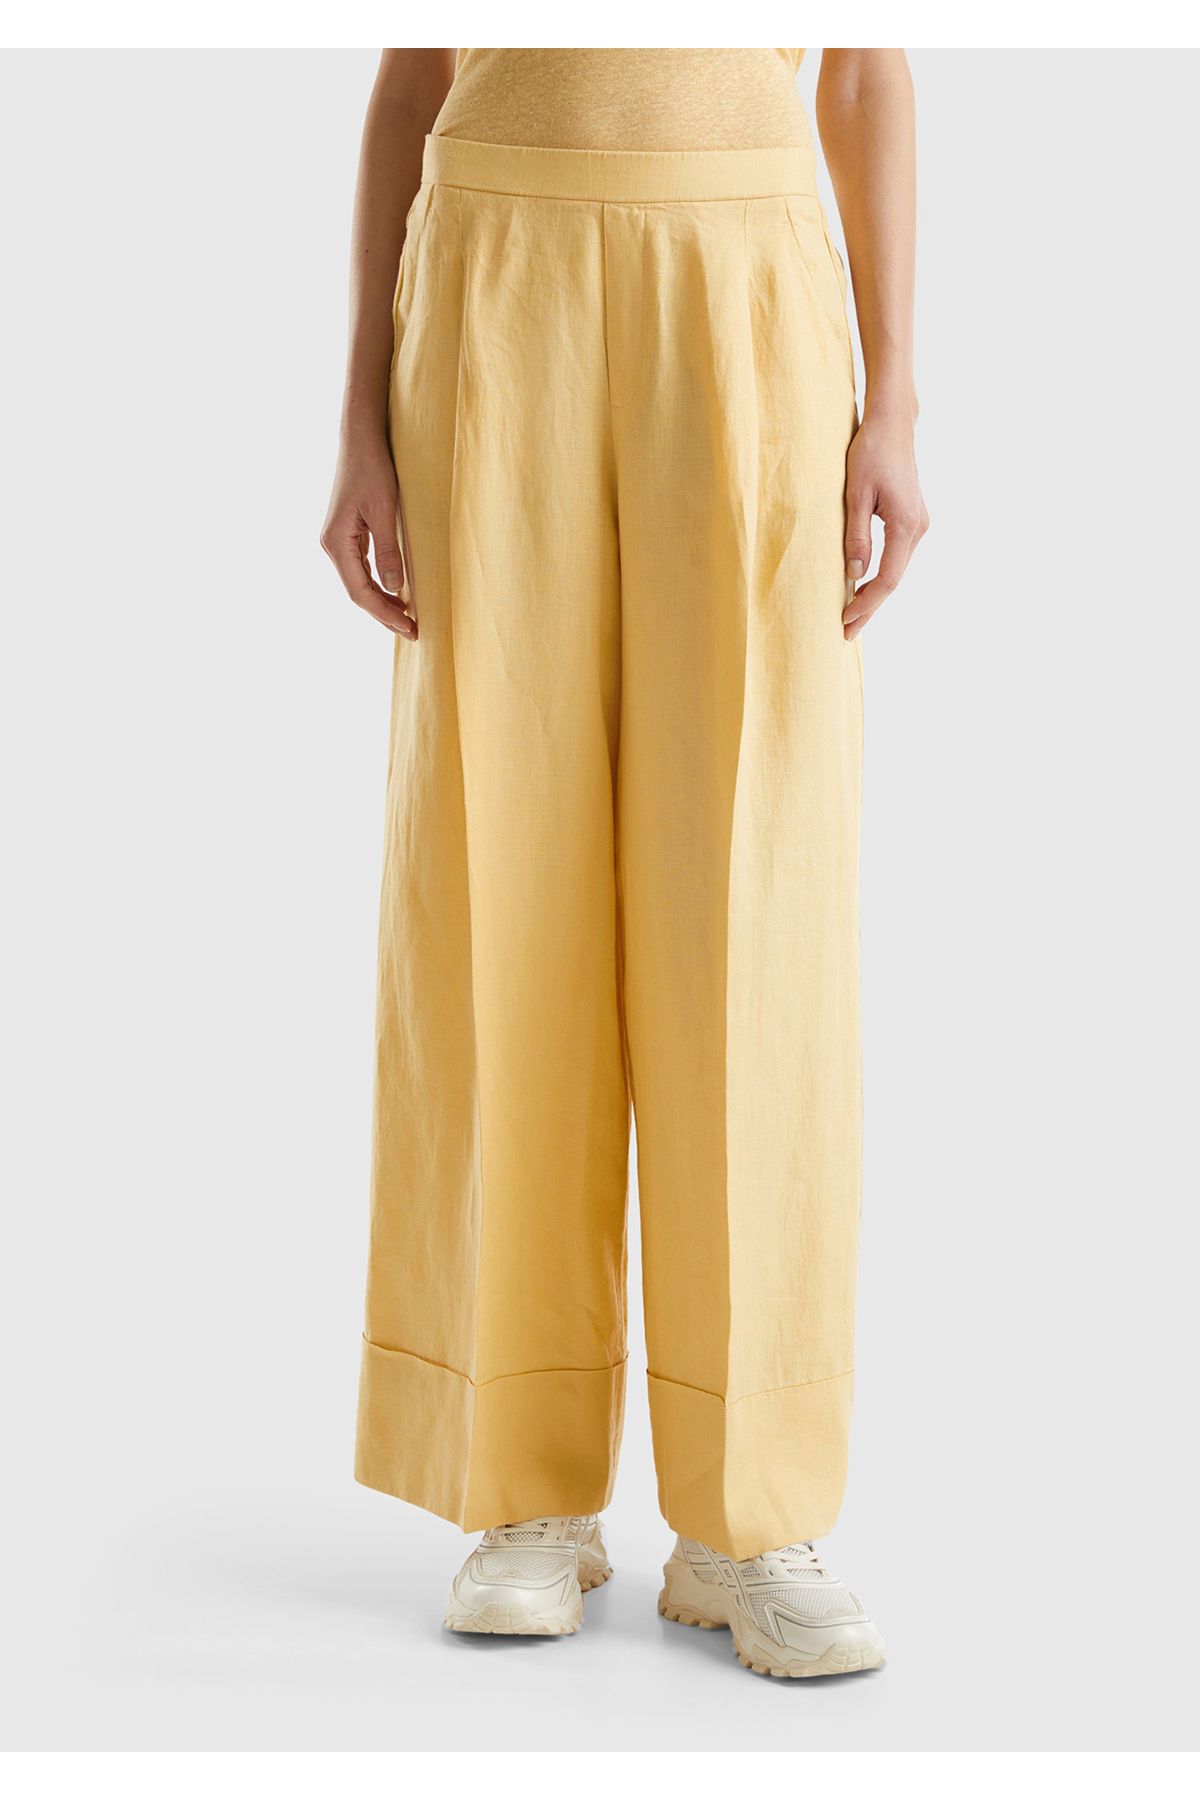 United Colors of Benetton Kadın Açık Sarı %100 Keten Beli Lastikli Geniş Kesim Pantolon